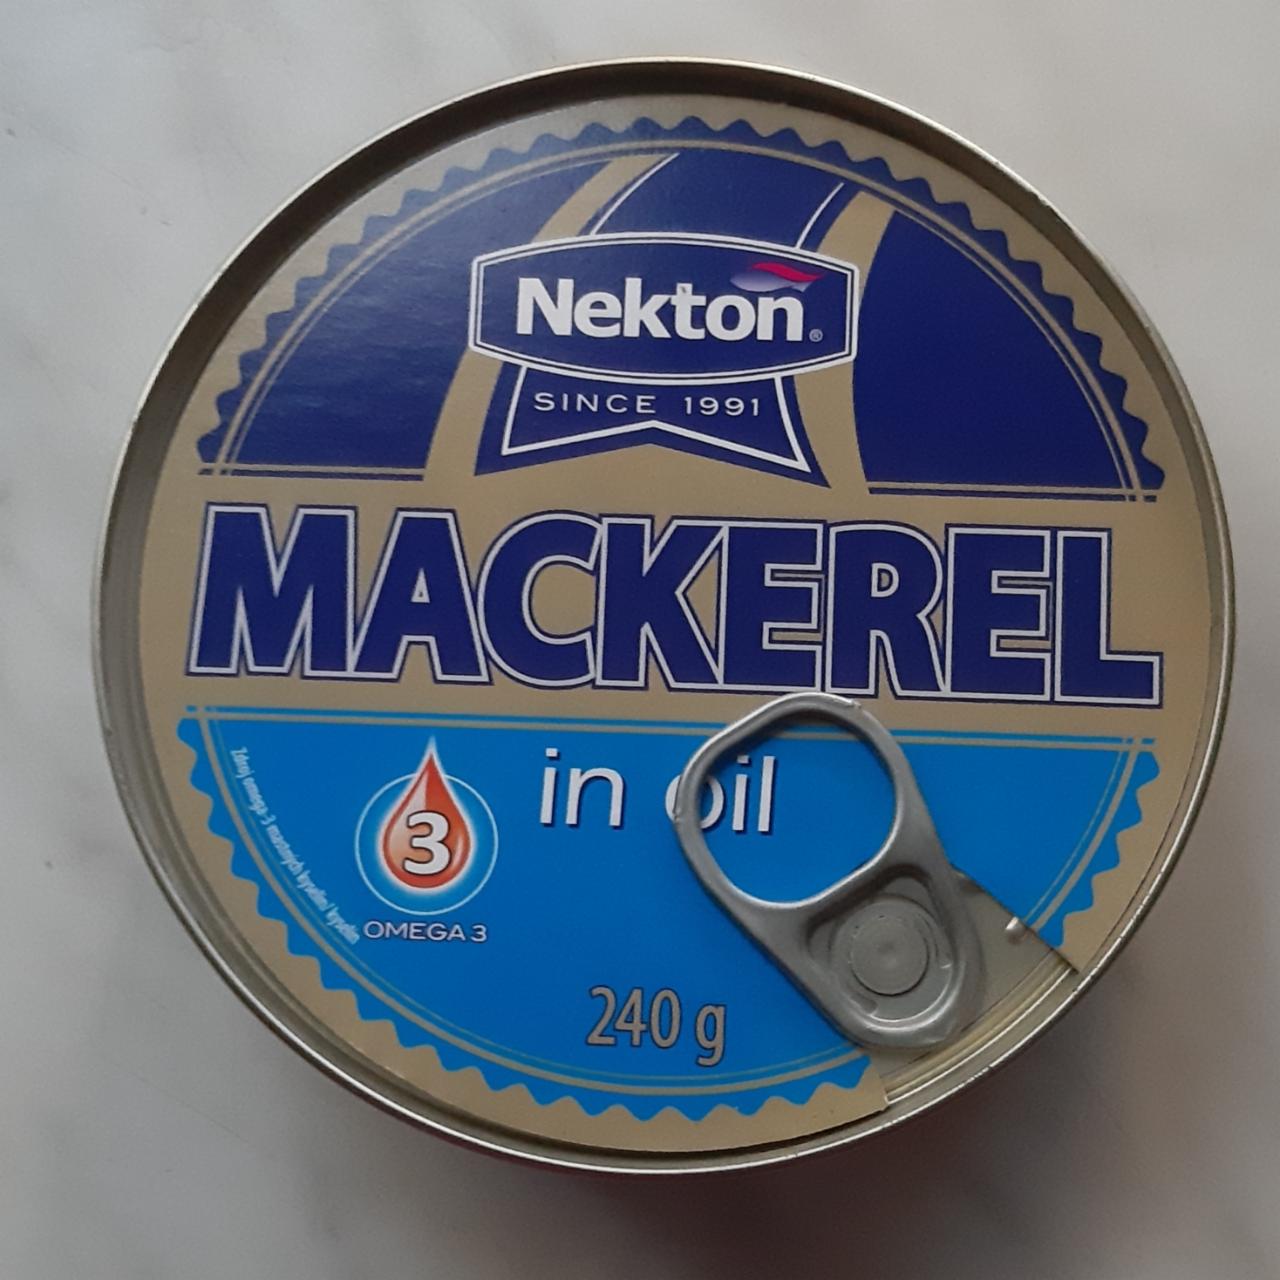 Fotografie - Mackerel in oil Nekton